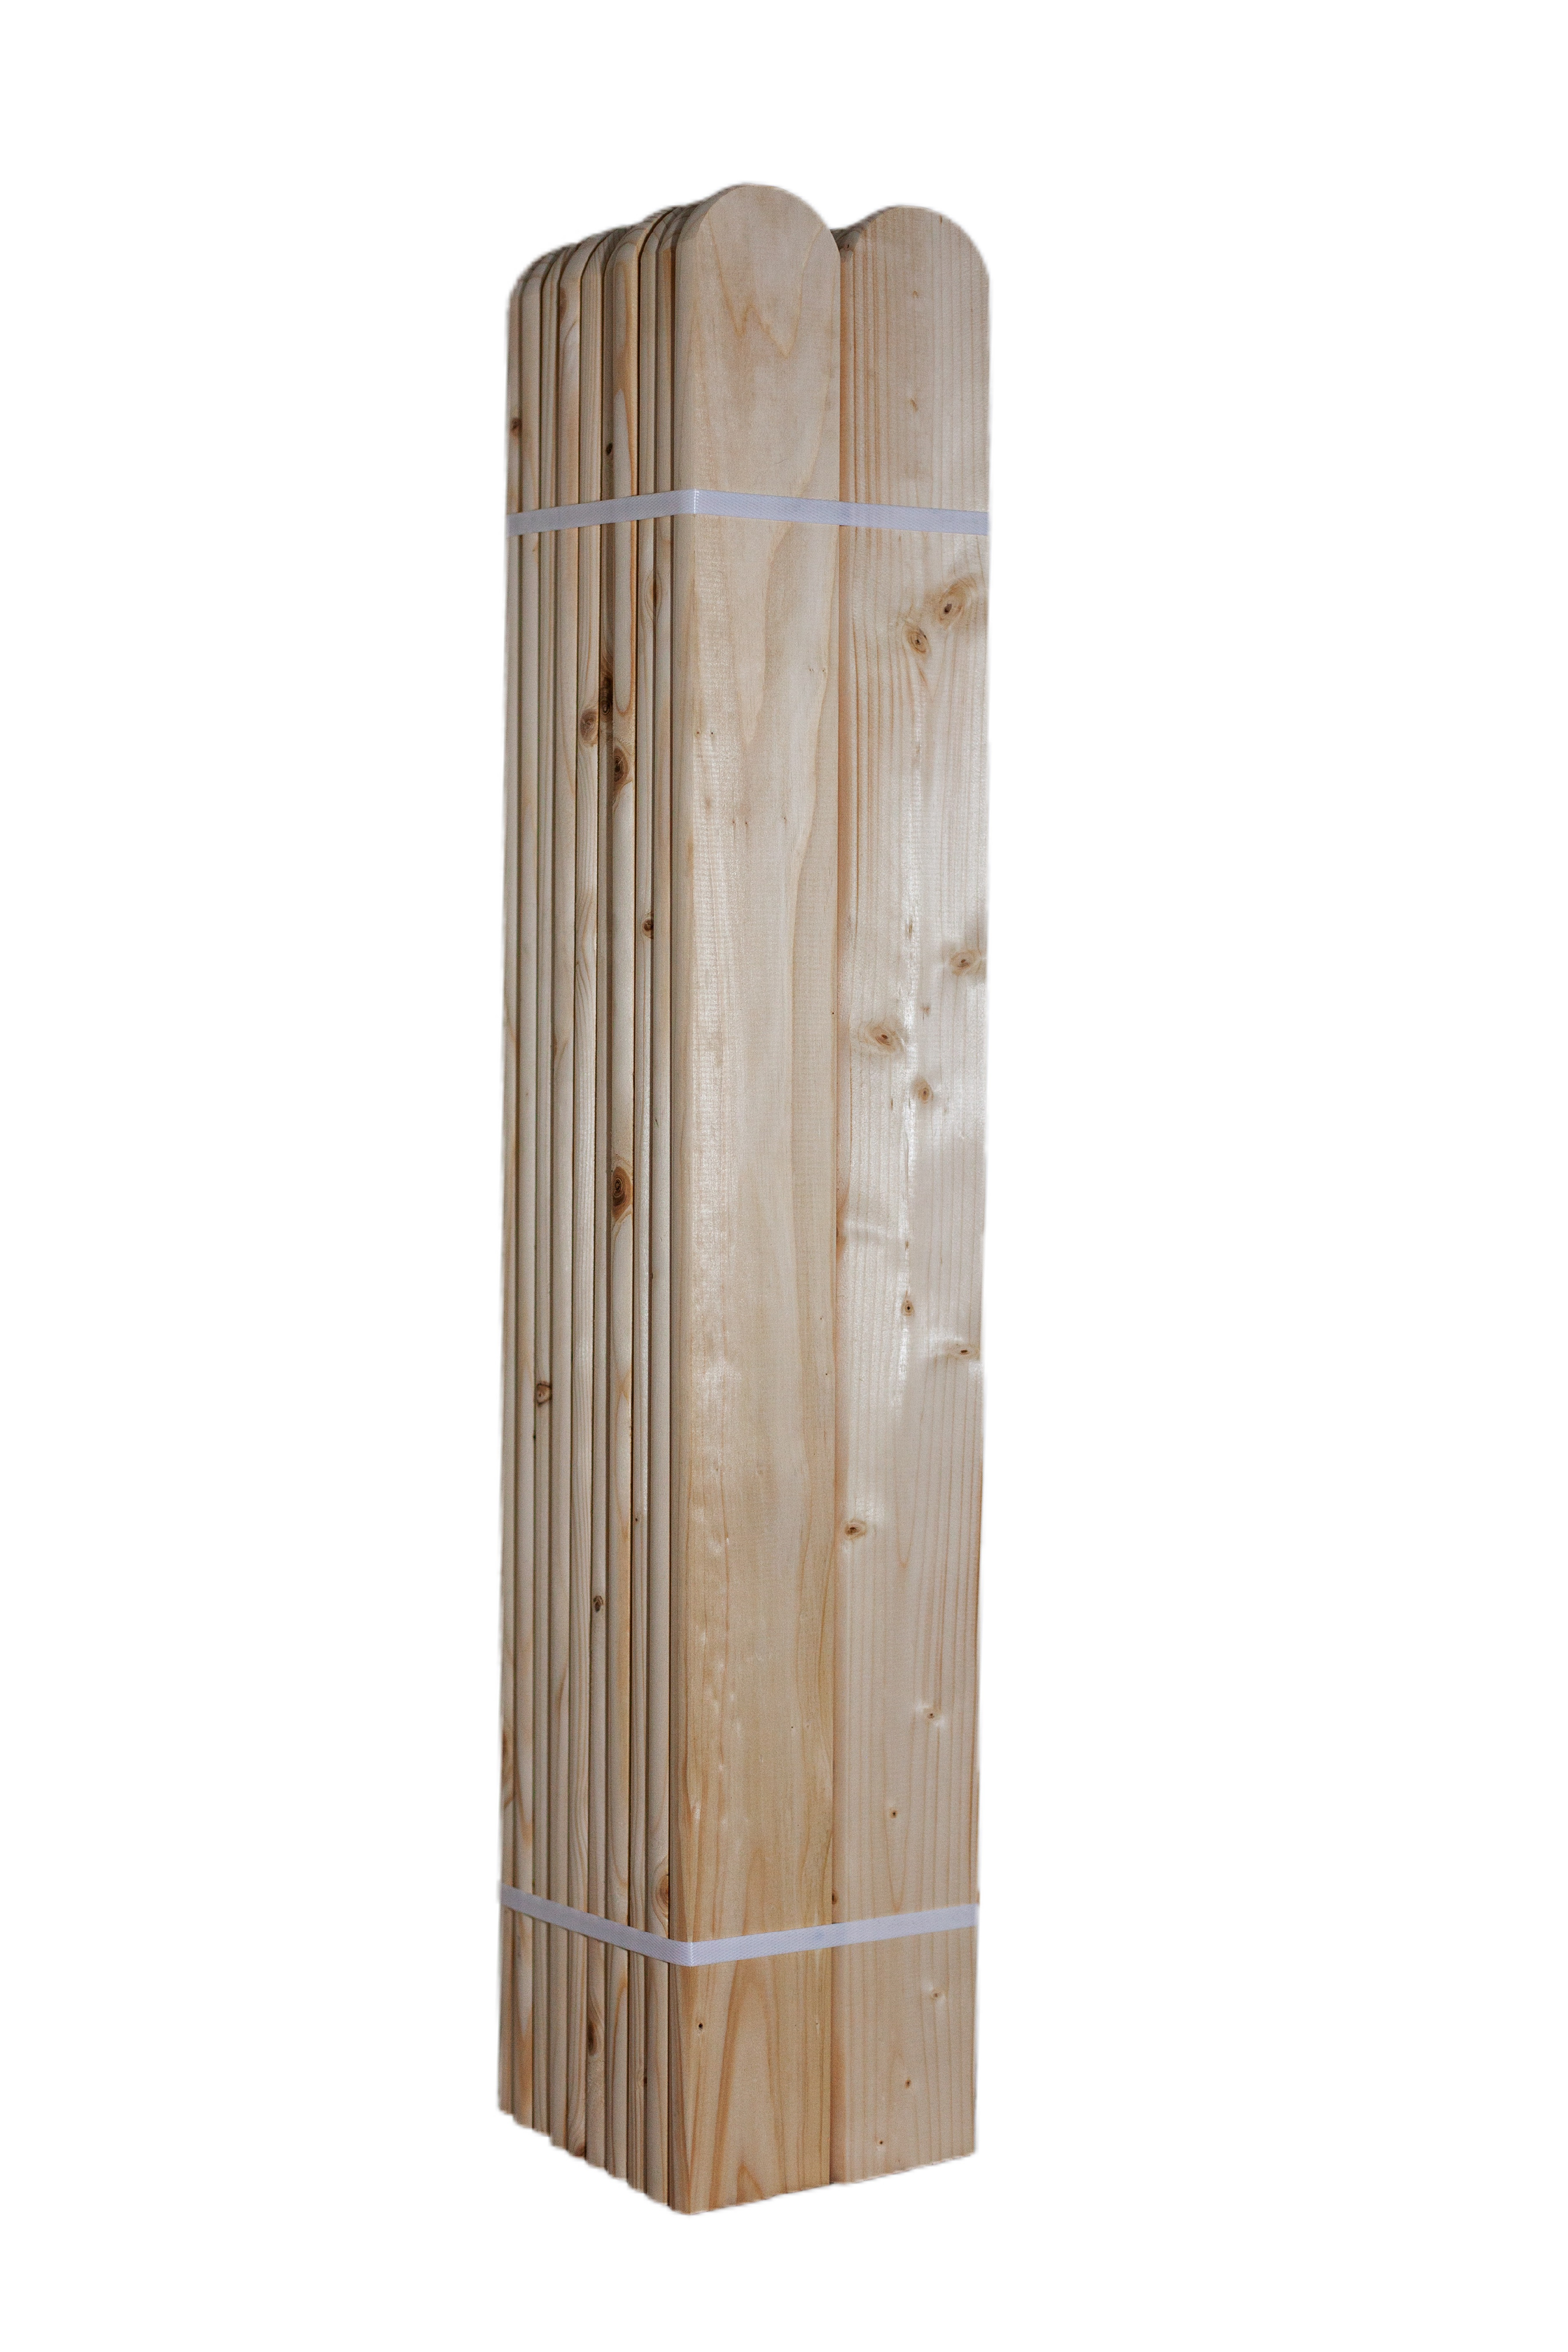 LC Dřevěná smrková plotovka, 20 x 90 mm zakulacená 1ks Výška plotovek: 100 cm